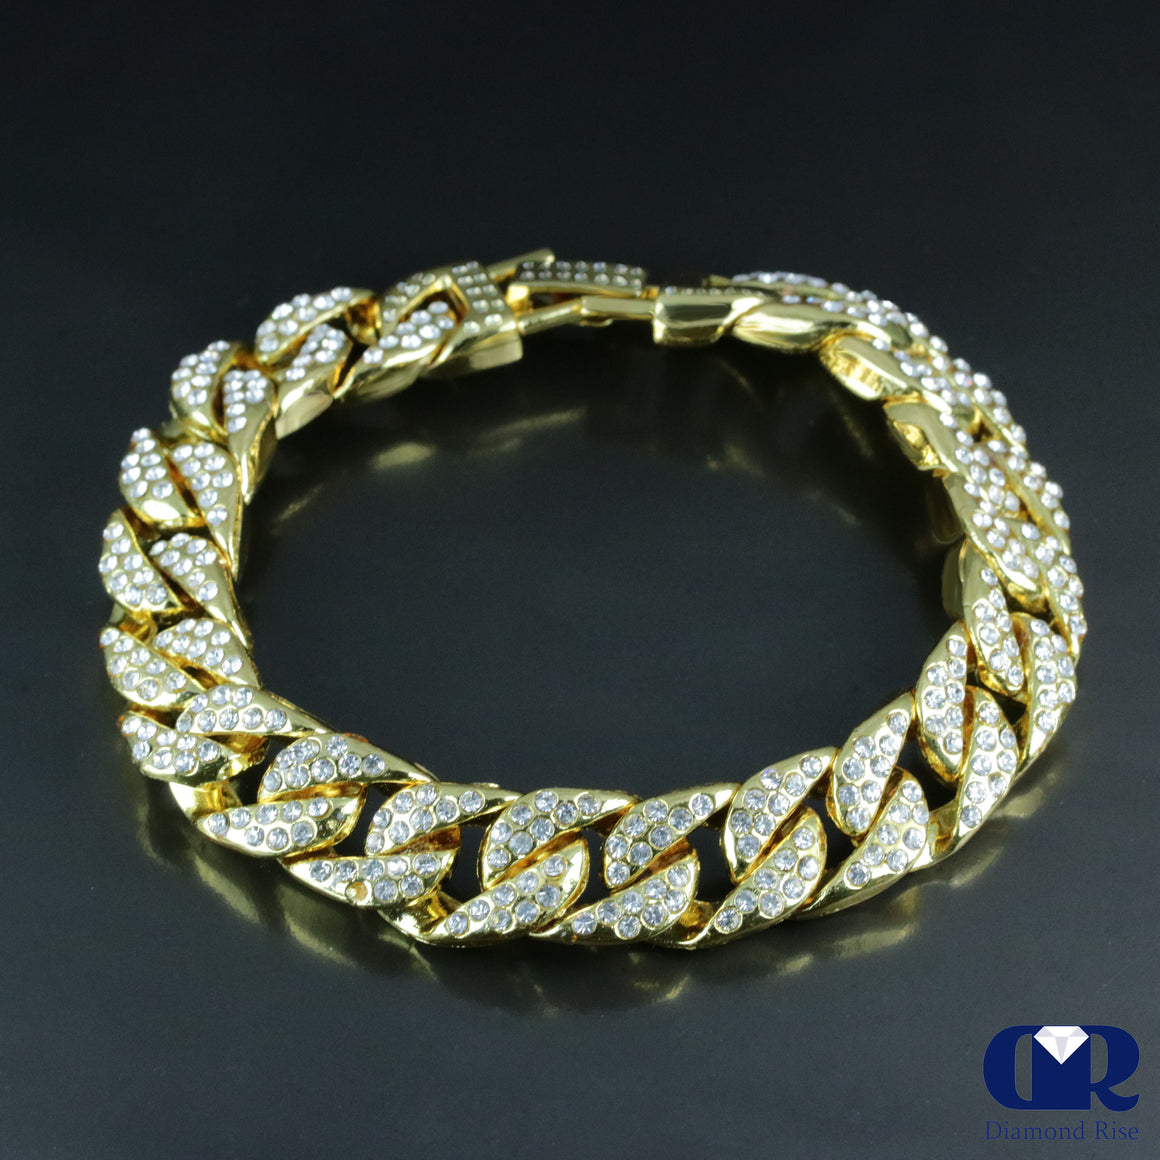 Men's Heavy 9" Double Row Diamond Cuban Chain Bracelet In 14K Gold 15mm - Diamond Rise Jewelry